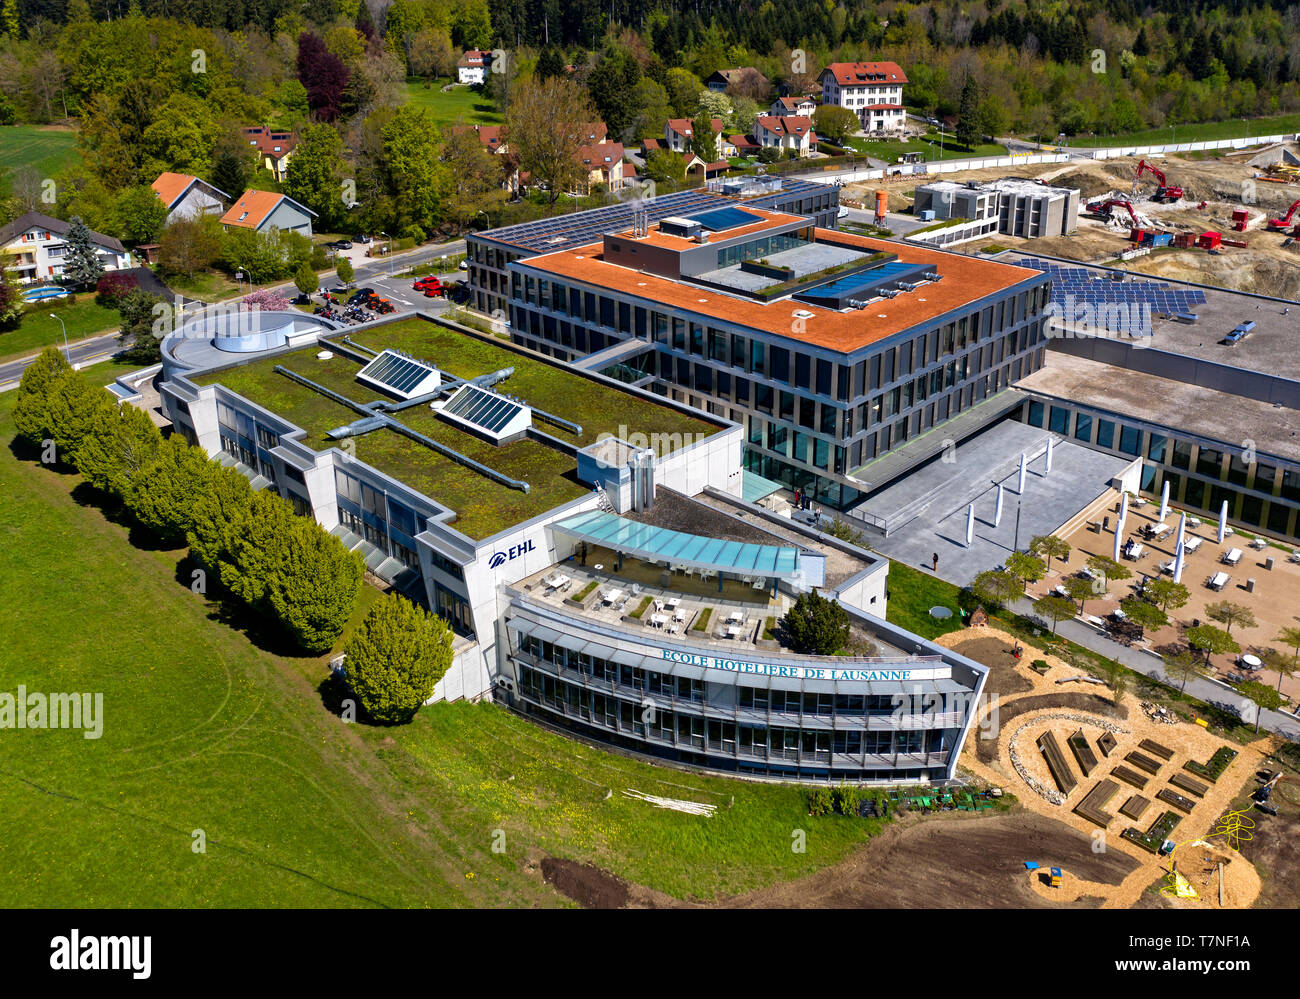 Hospitality management school École hôtelière de Lausanne (EHL), Lausanne, Switzerland Stock Photo